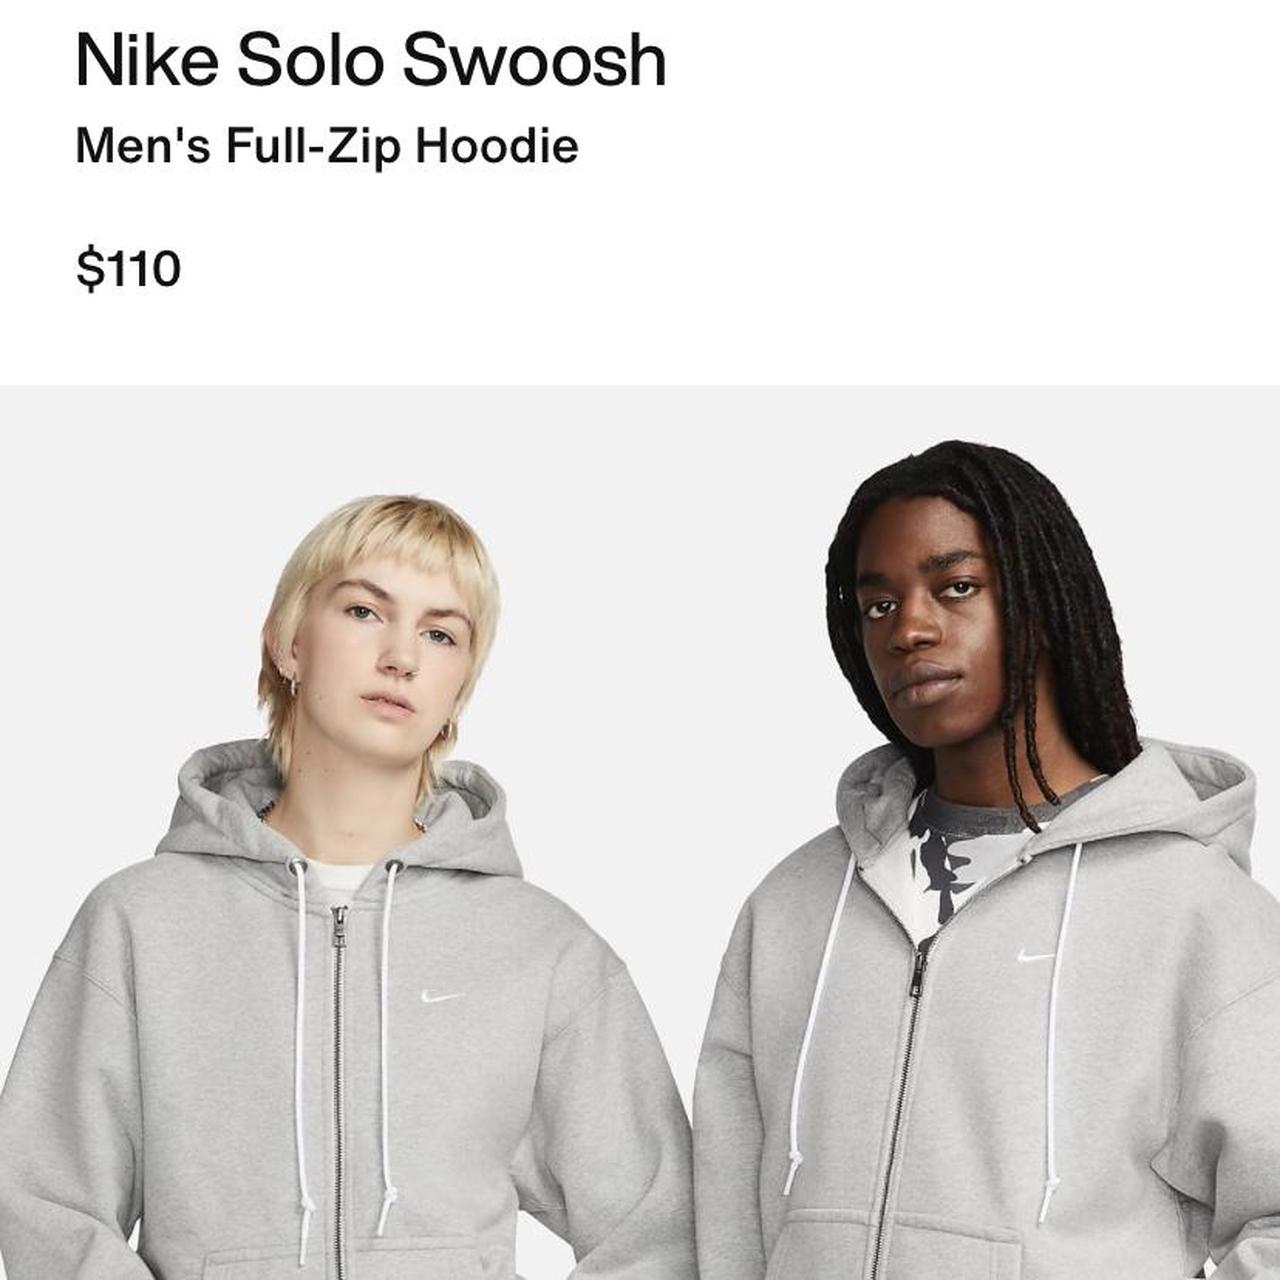 Nike Solo Swoosh Men's Full-Zip Hoodie.